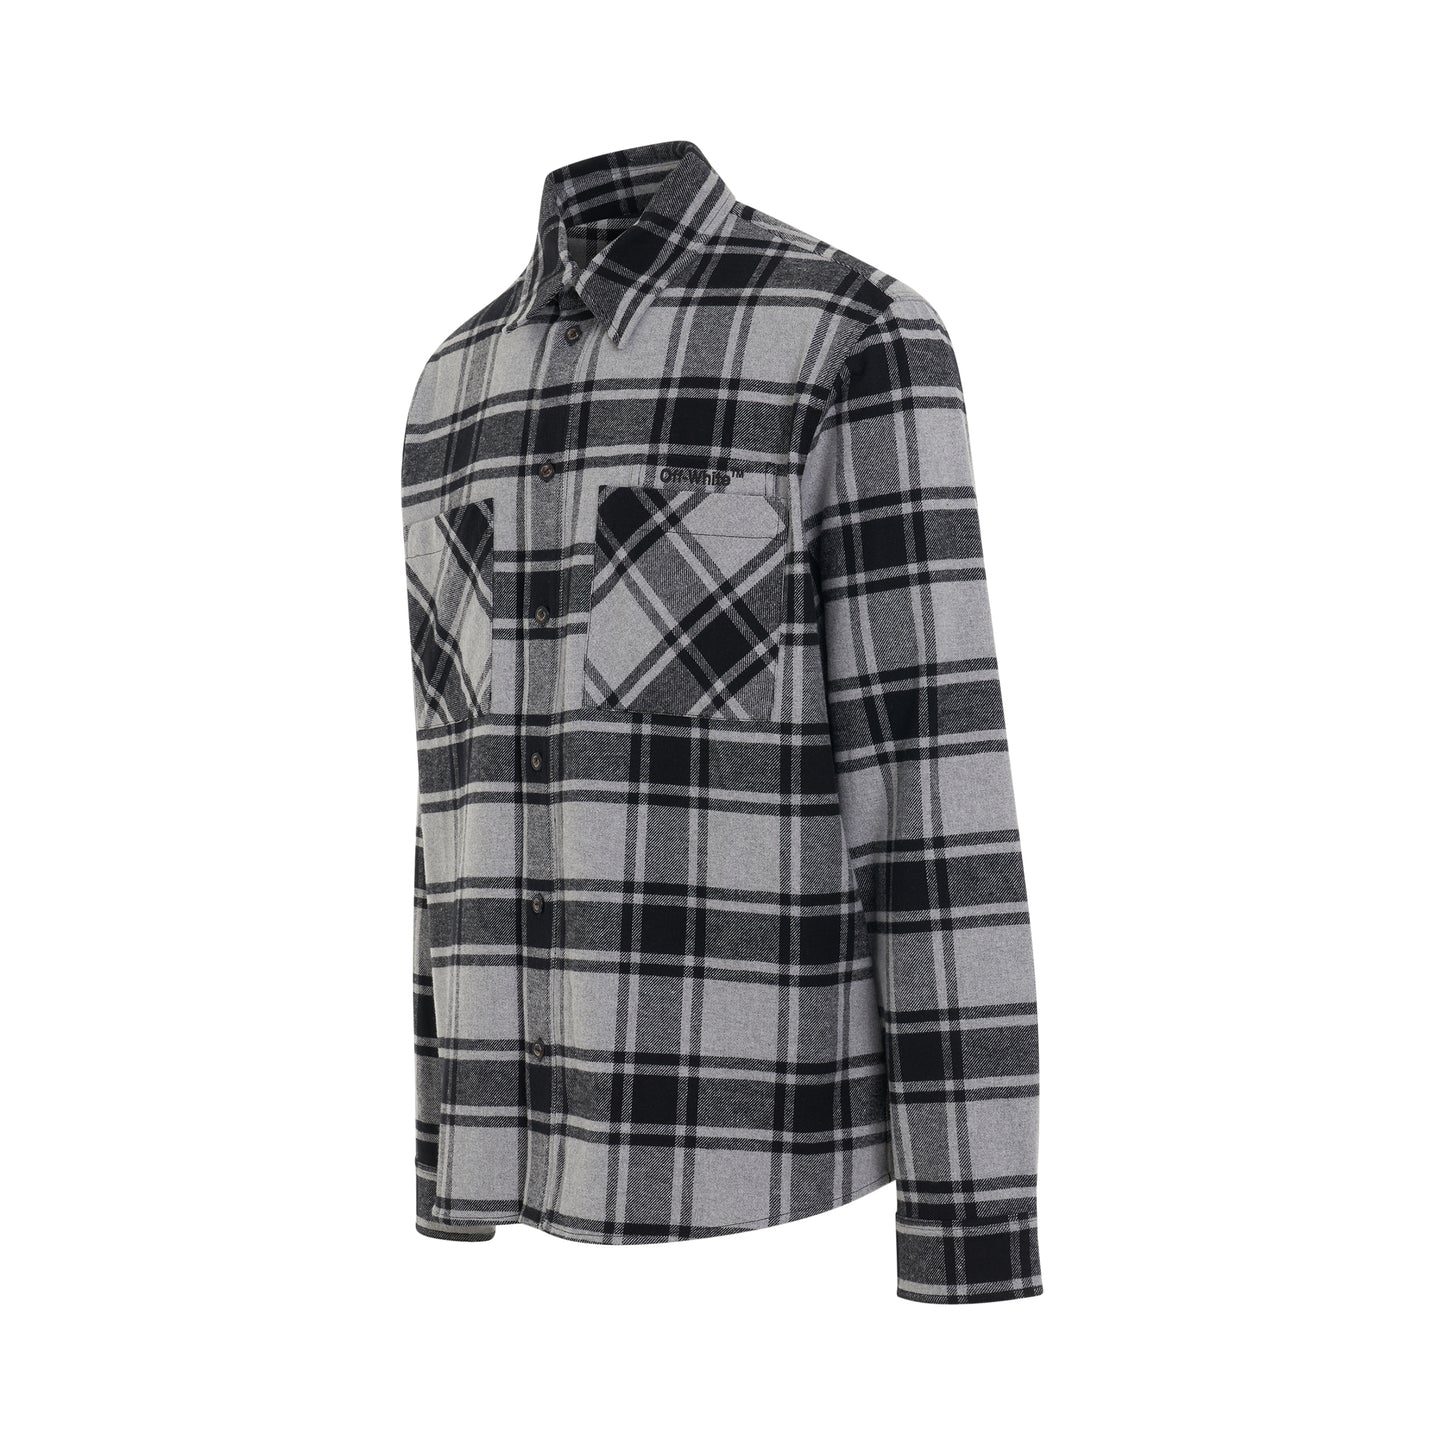 Outline Arrow Flannel Shirt in Melange Grey/Black